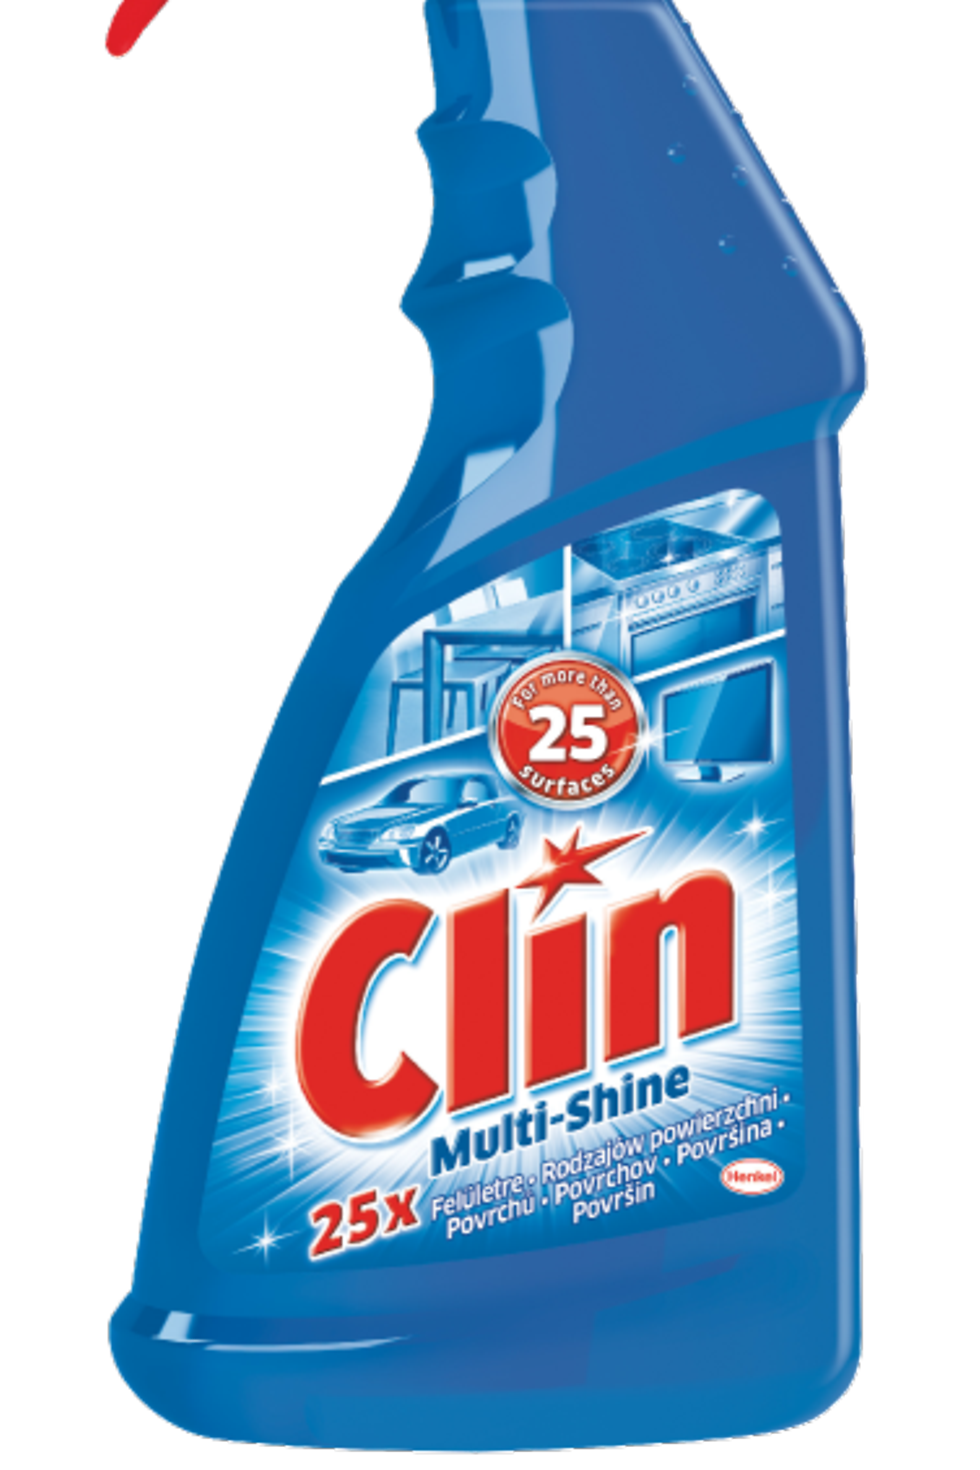 Clin Multi-Shine